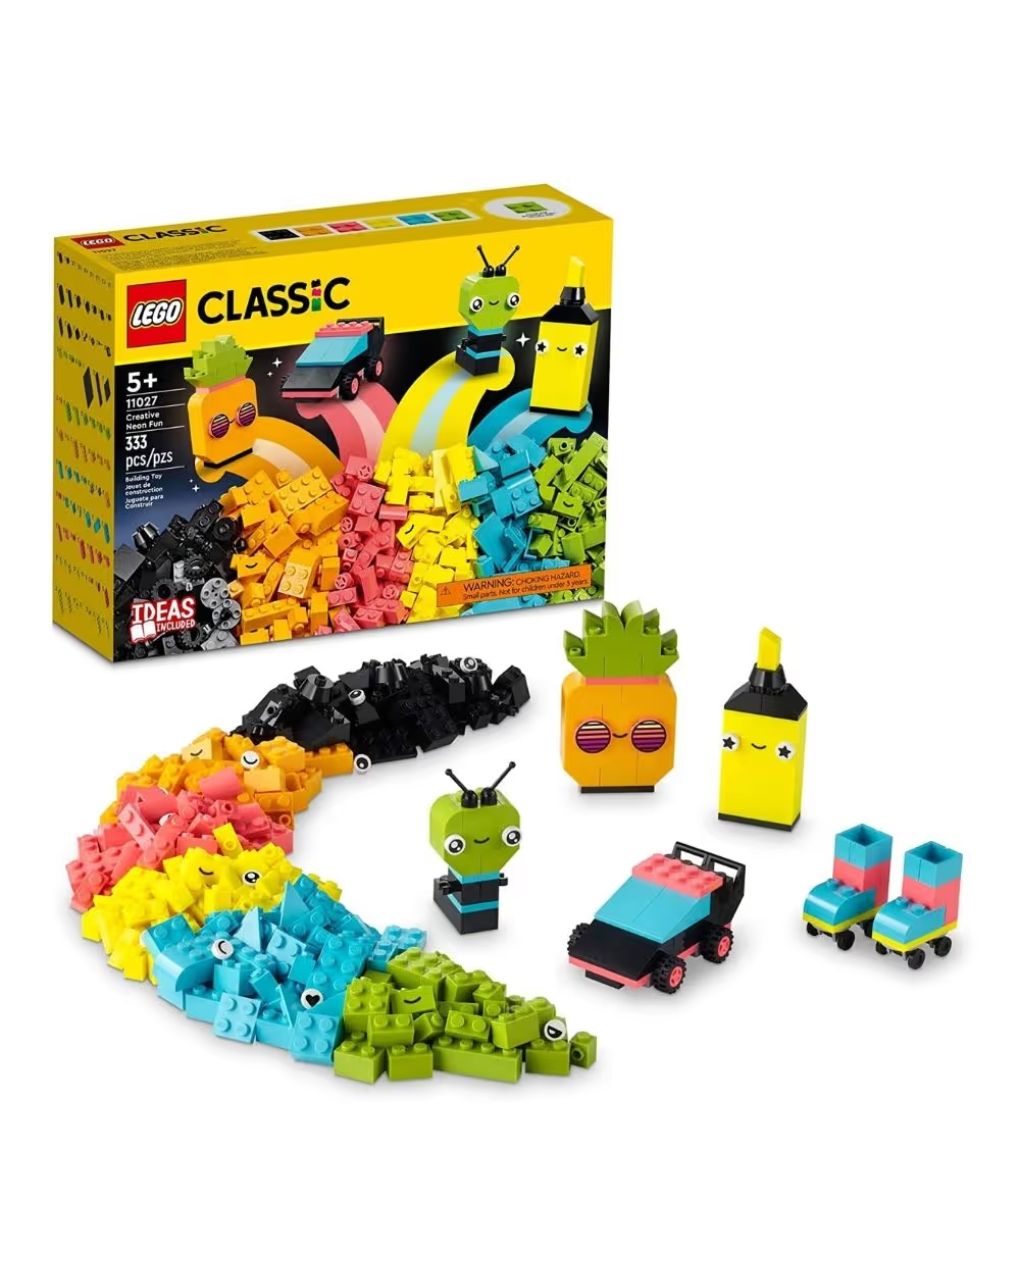 Lego classic δημιουργική διασκέδαση σε νέον χρώματα 11027